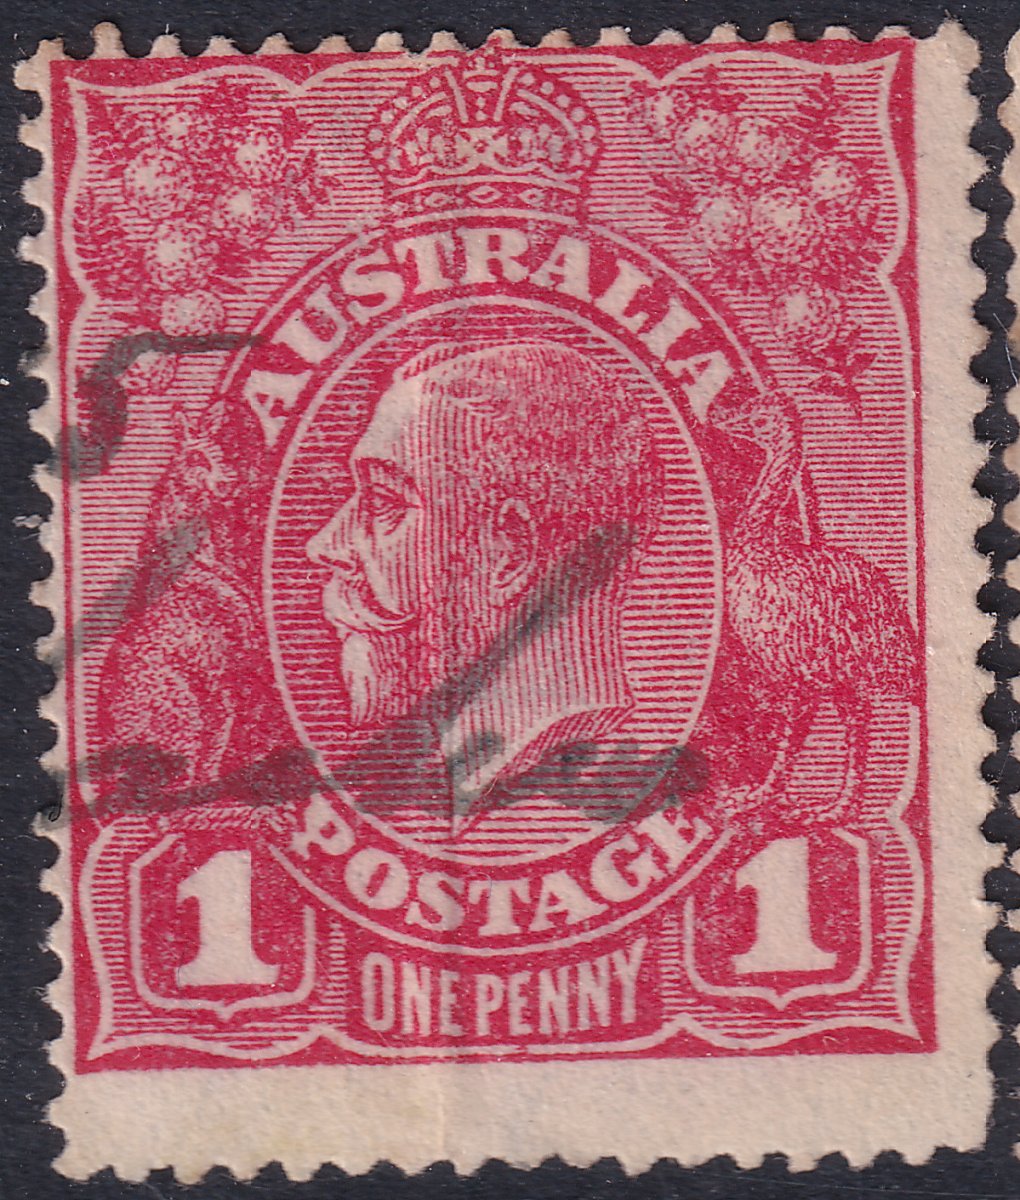 Australia manuscript postmark 5.jpg